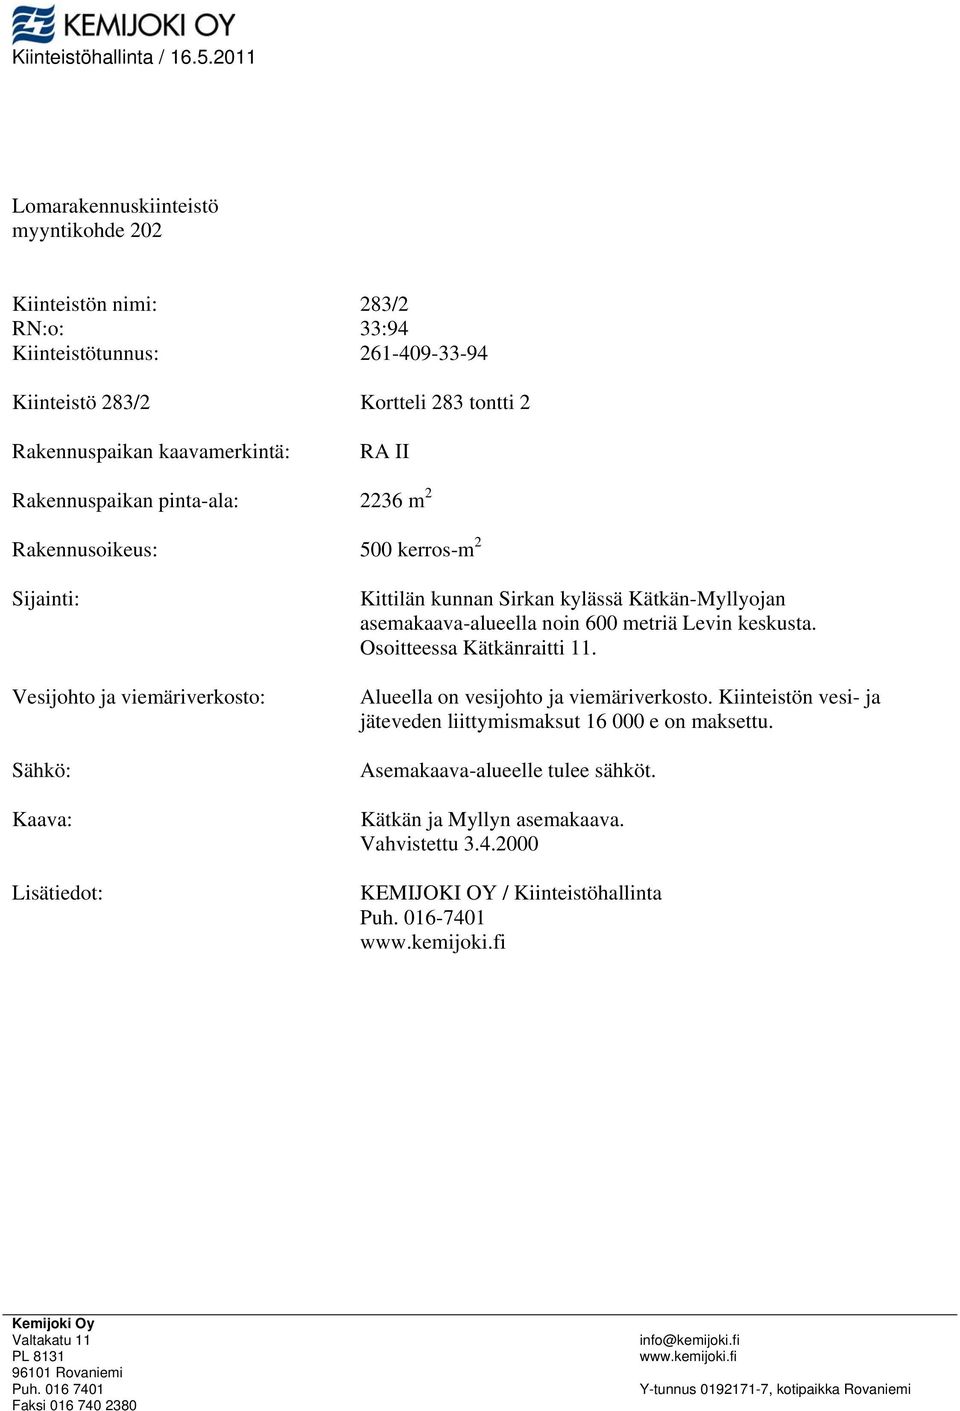 Rkennusoikeus: 00 kerros-m Sijinti: Vesijohto j viemäriverkosto: Sähkö: Kv: Lisätiedot: Kittilän kunnn Sirkn kylässä Kätkän-yllyojn semkv-lueell noin 600 metriä Levin keskust.